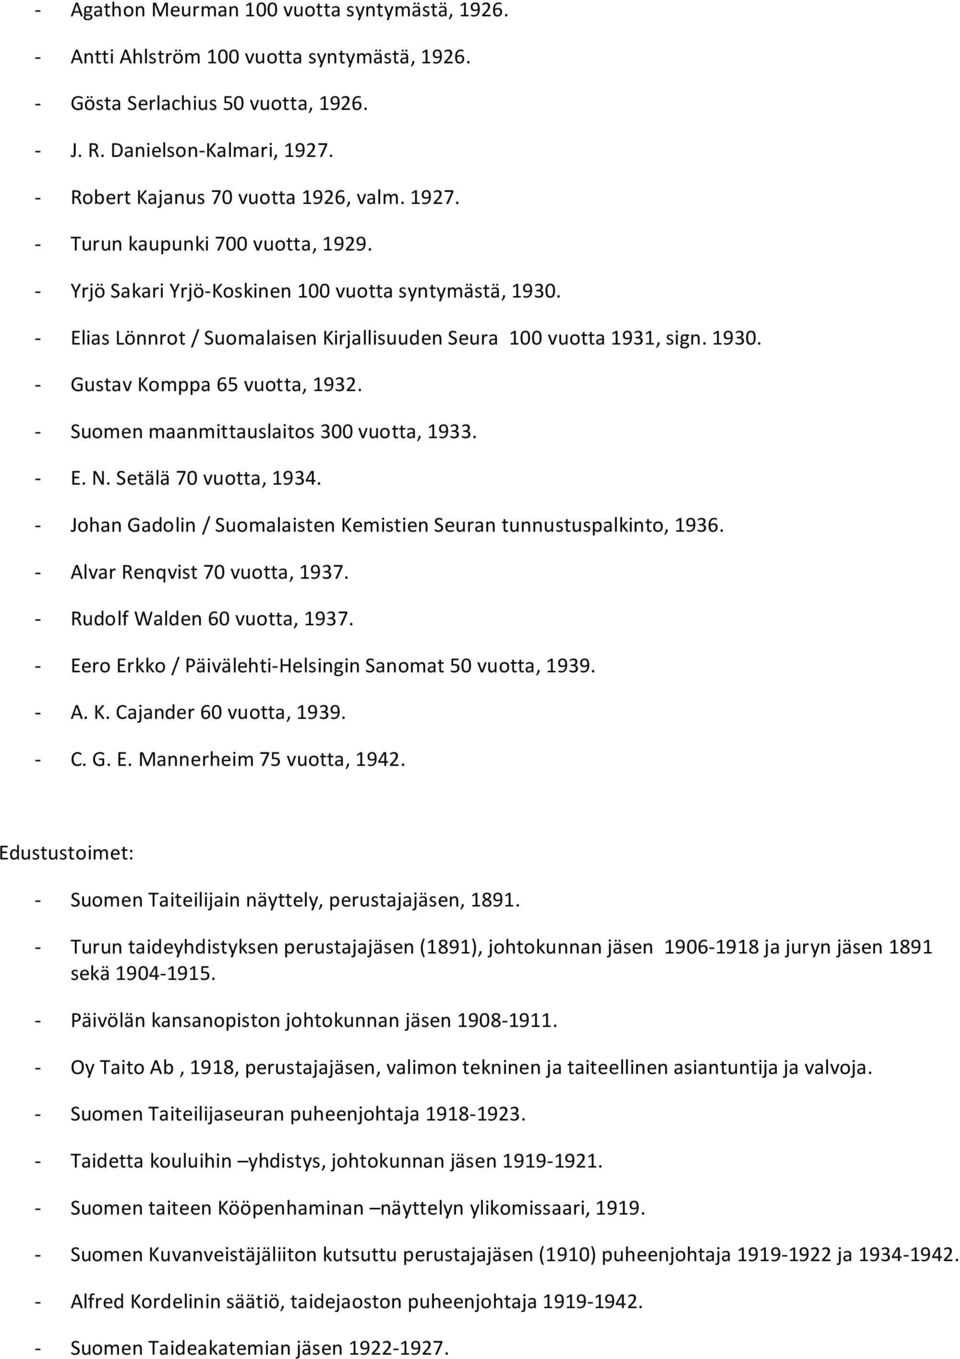 Setälä70vuotta,1934. JohanGadolin/SuomalaistenKemistienSeurantunnustuspalkinto,1936. AlvarRenqvist70vuotta,1937. RudolfWalden60vuotta,1937. EeroErkko/Päivälehti HelsinginSanomat50vuotta,1939. A.K.Cajander60vuotta,1939.